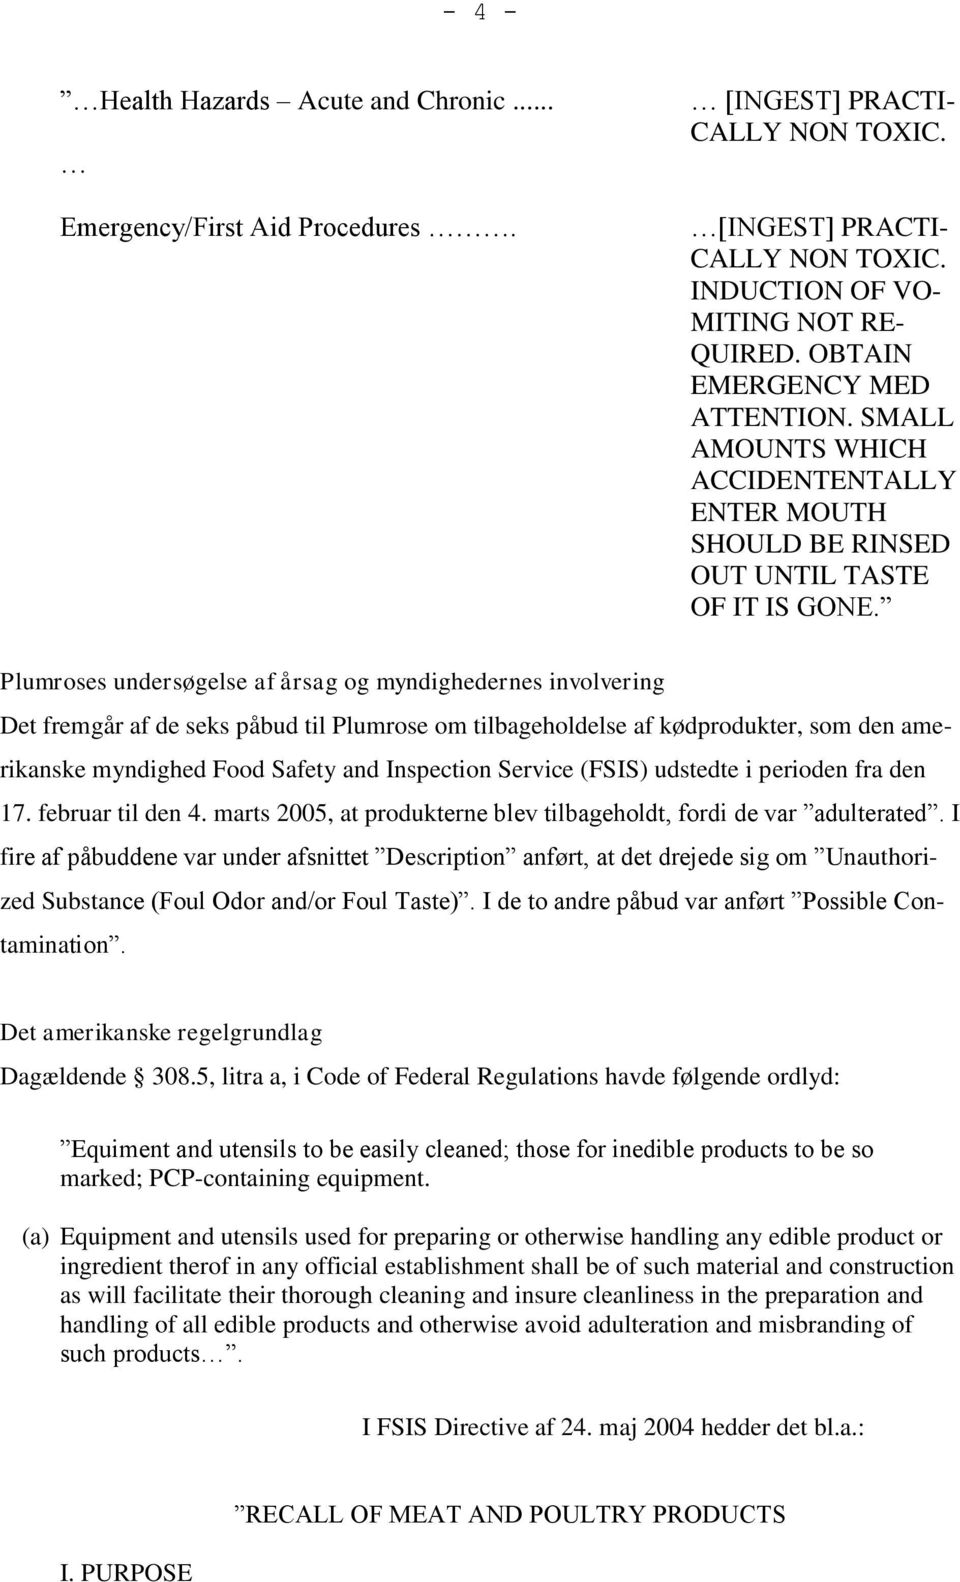 Plumroses undersøgelse af årsag og myndighedernes involvering Det fremgår af de seks påbud til Plumrose om tilbageholdelse af kødprodukter, som den amerikanske myndighed Food Safety and Inspection